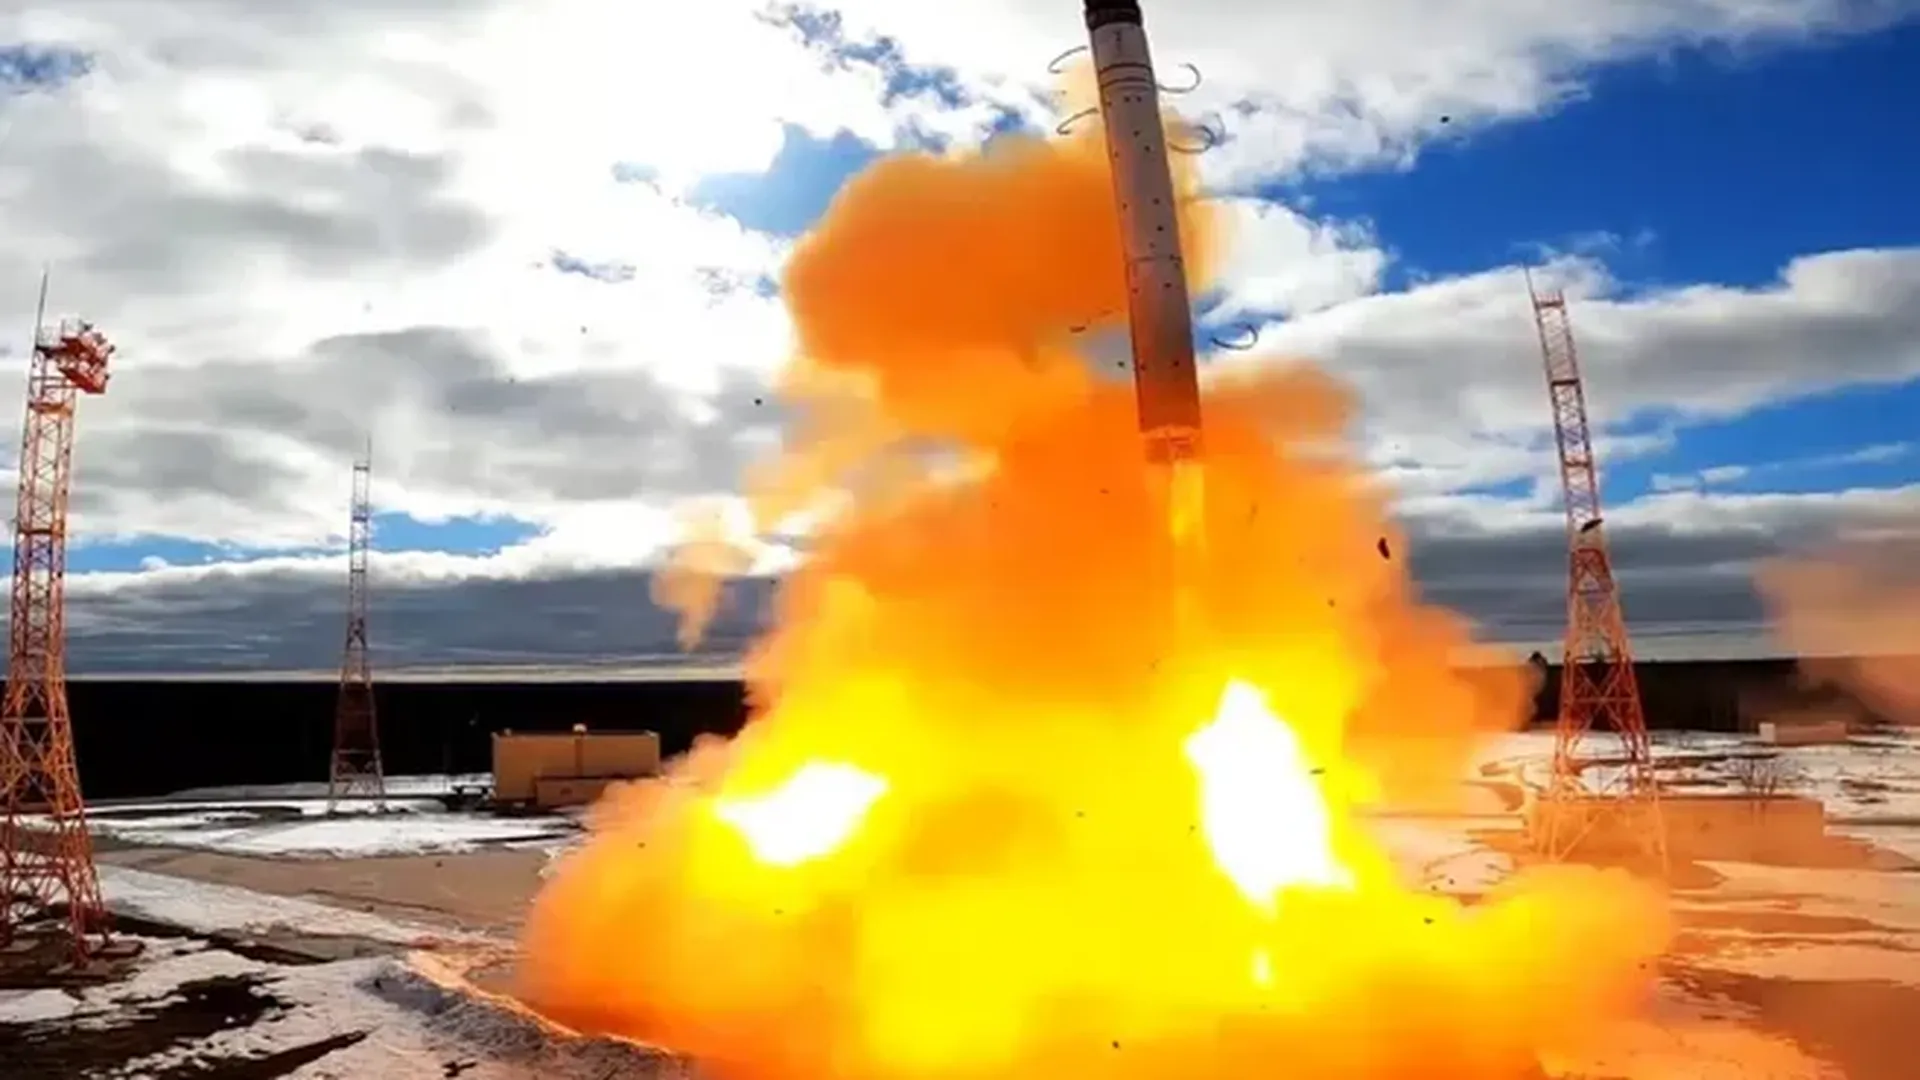 Запуск ракеты «Сармат». Фото: Минобороны России